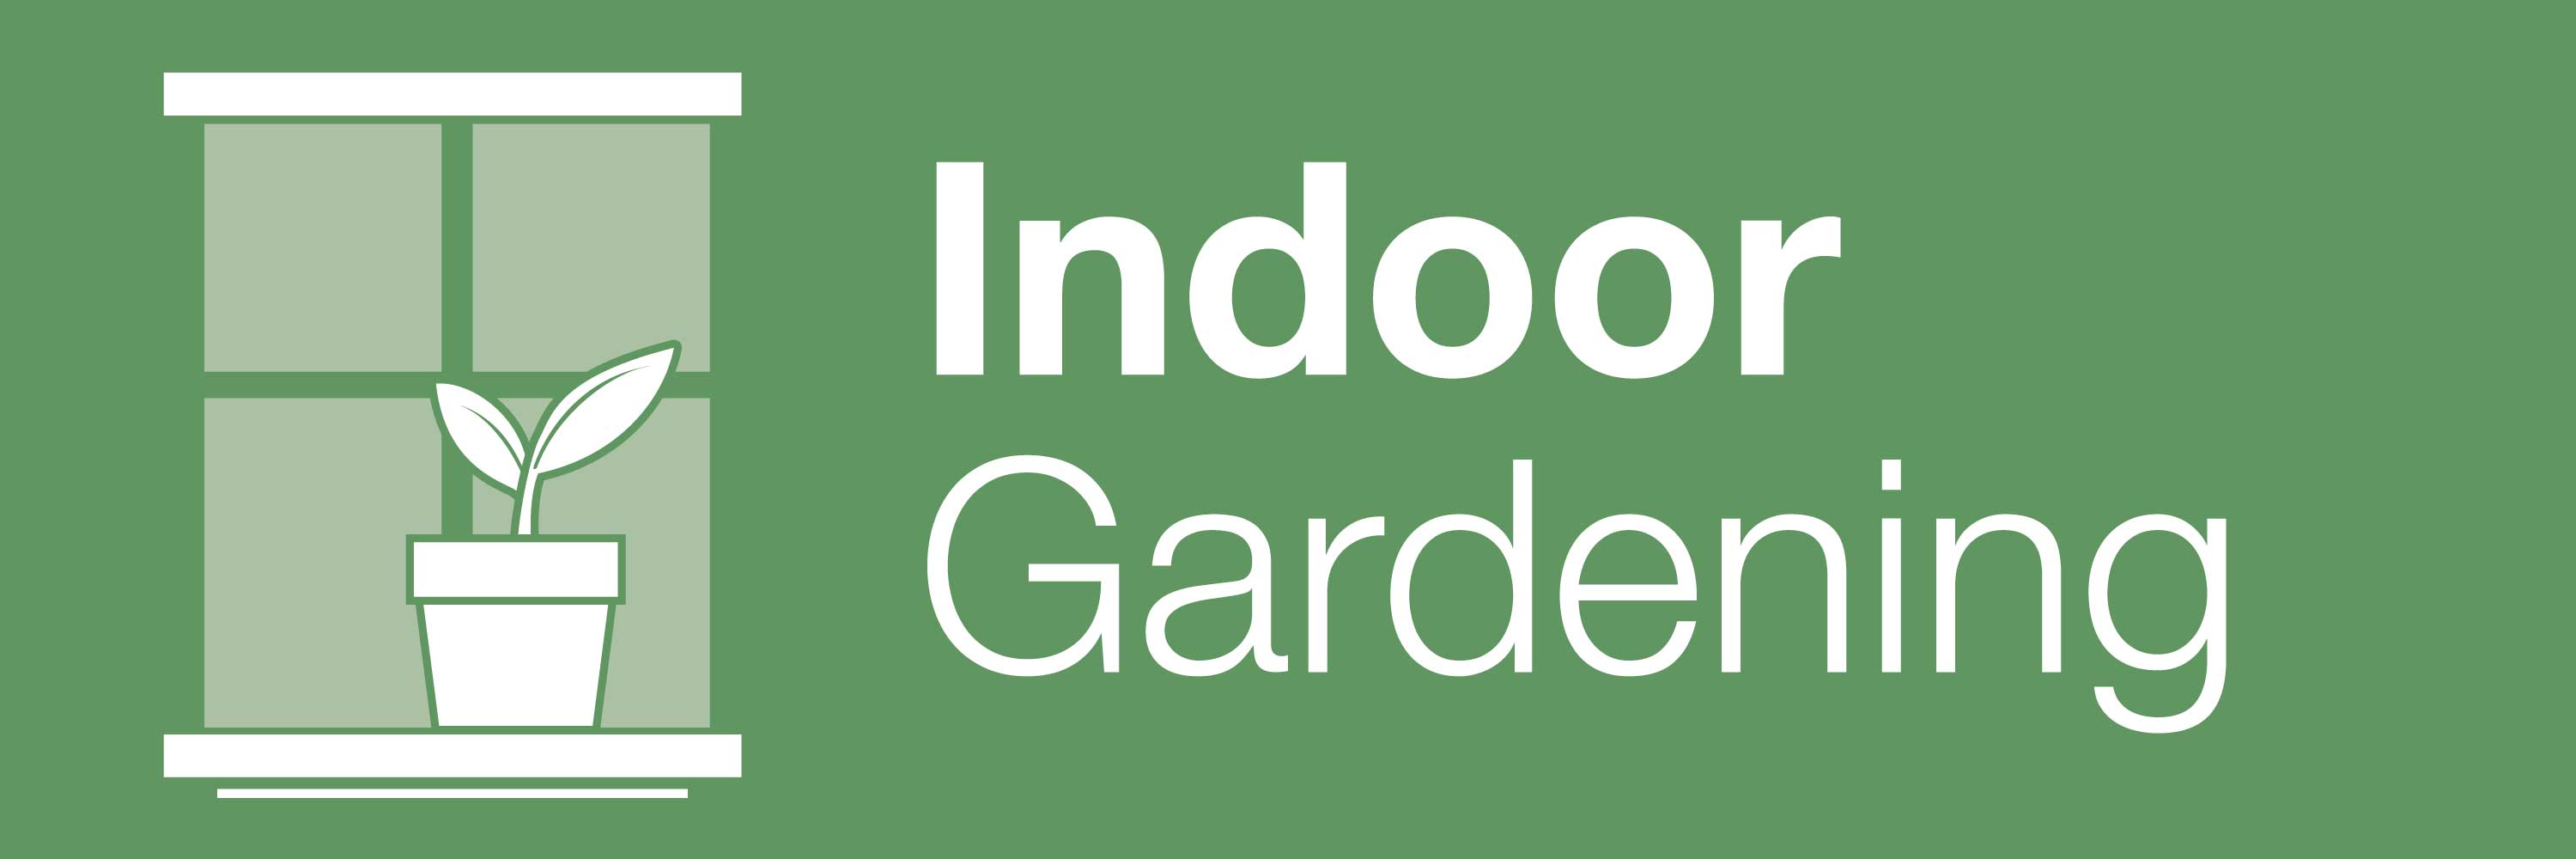 Indoor Gardening Banner